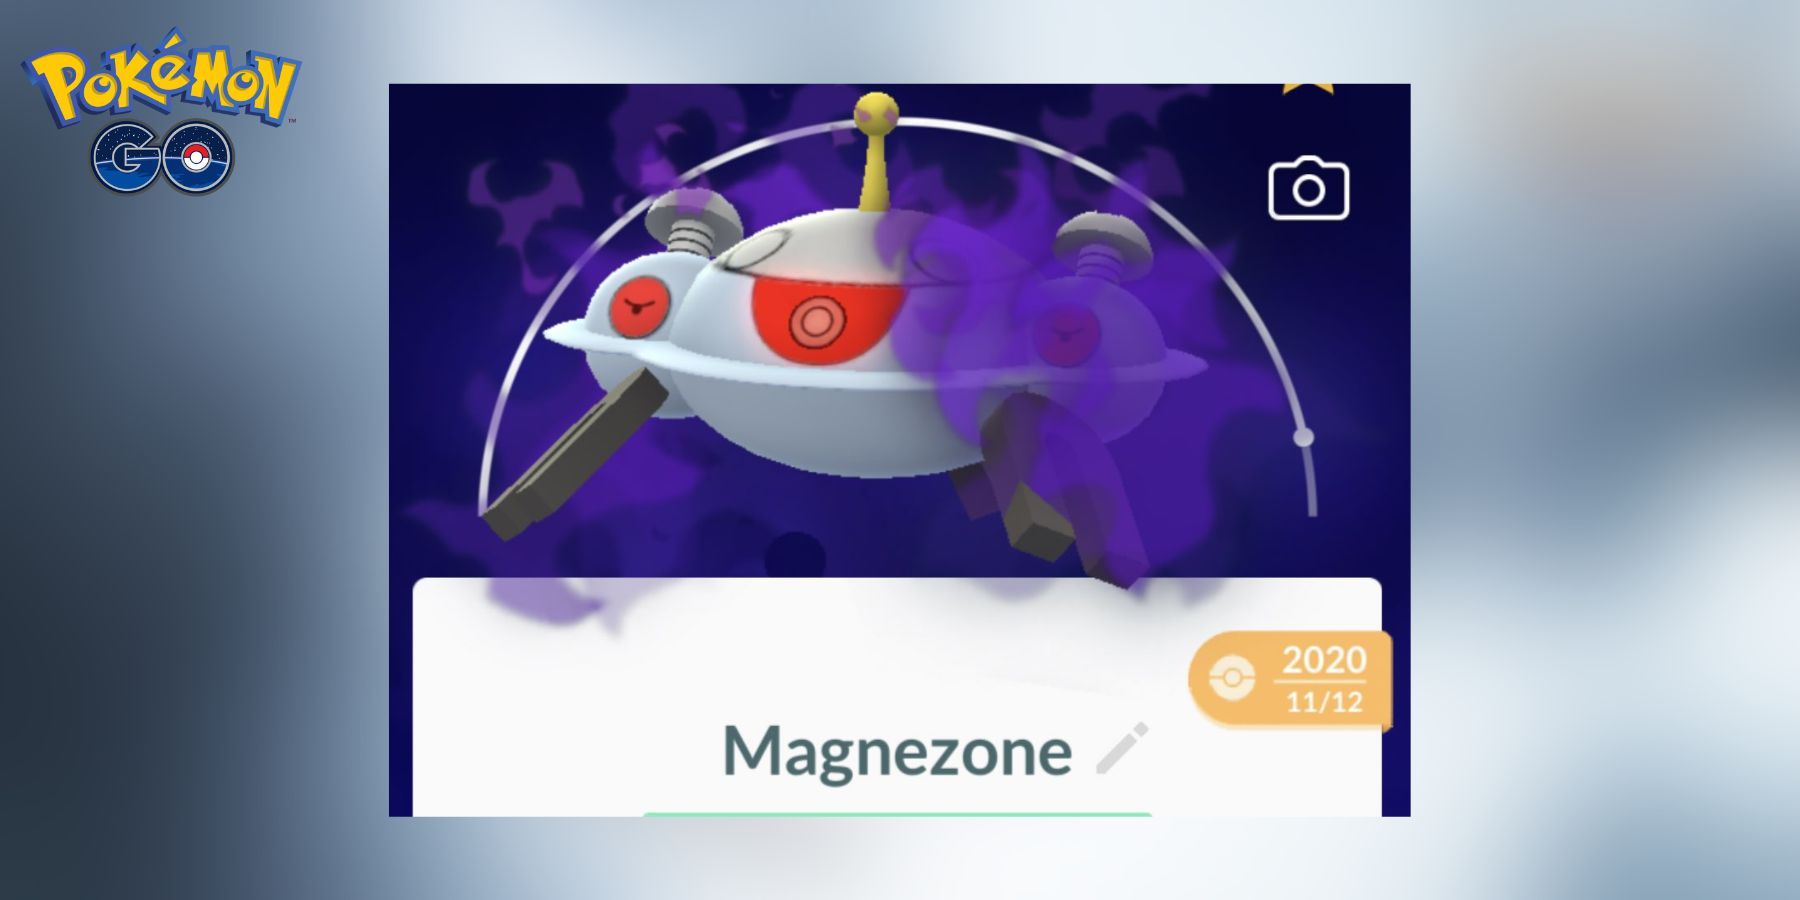 Shadow Magnezone in Pokemon GO